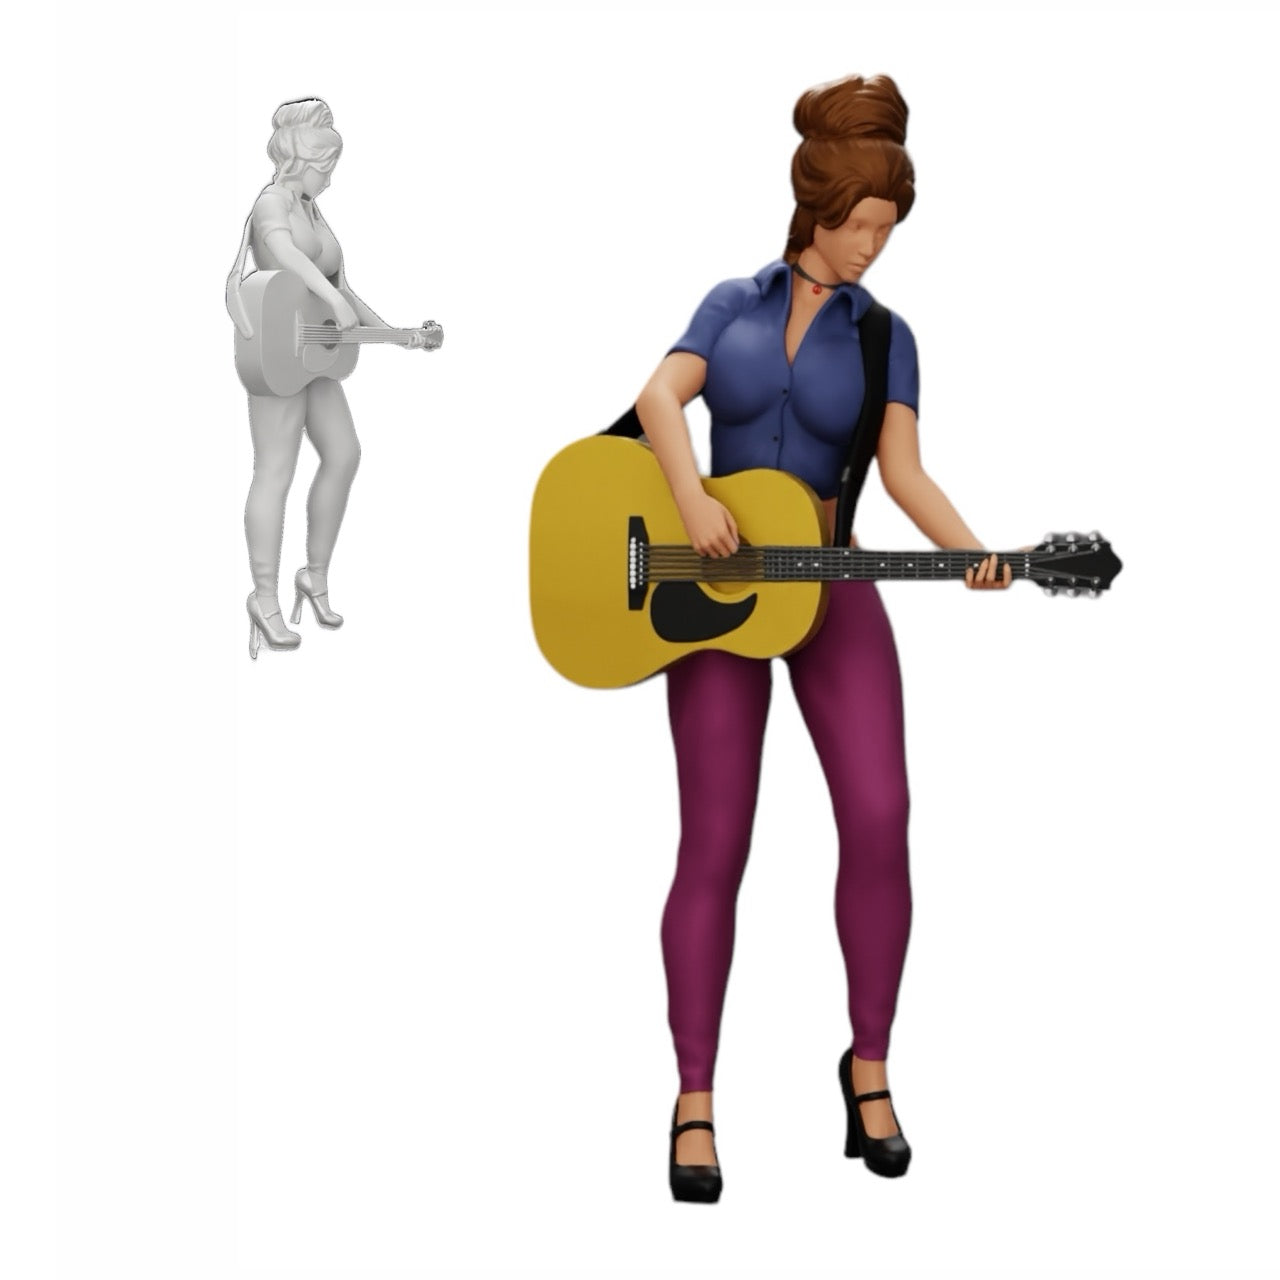 Diorama Modellbau Produktfoto 0: Junge Frau/ Musikerin auf der Bühne spielt Akustikgitarre (Ref Nr. A13)